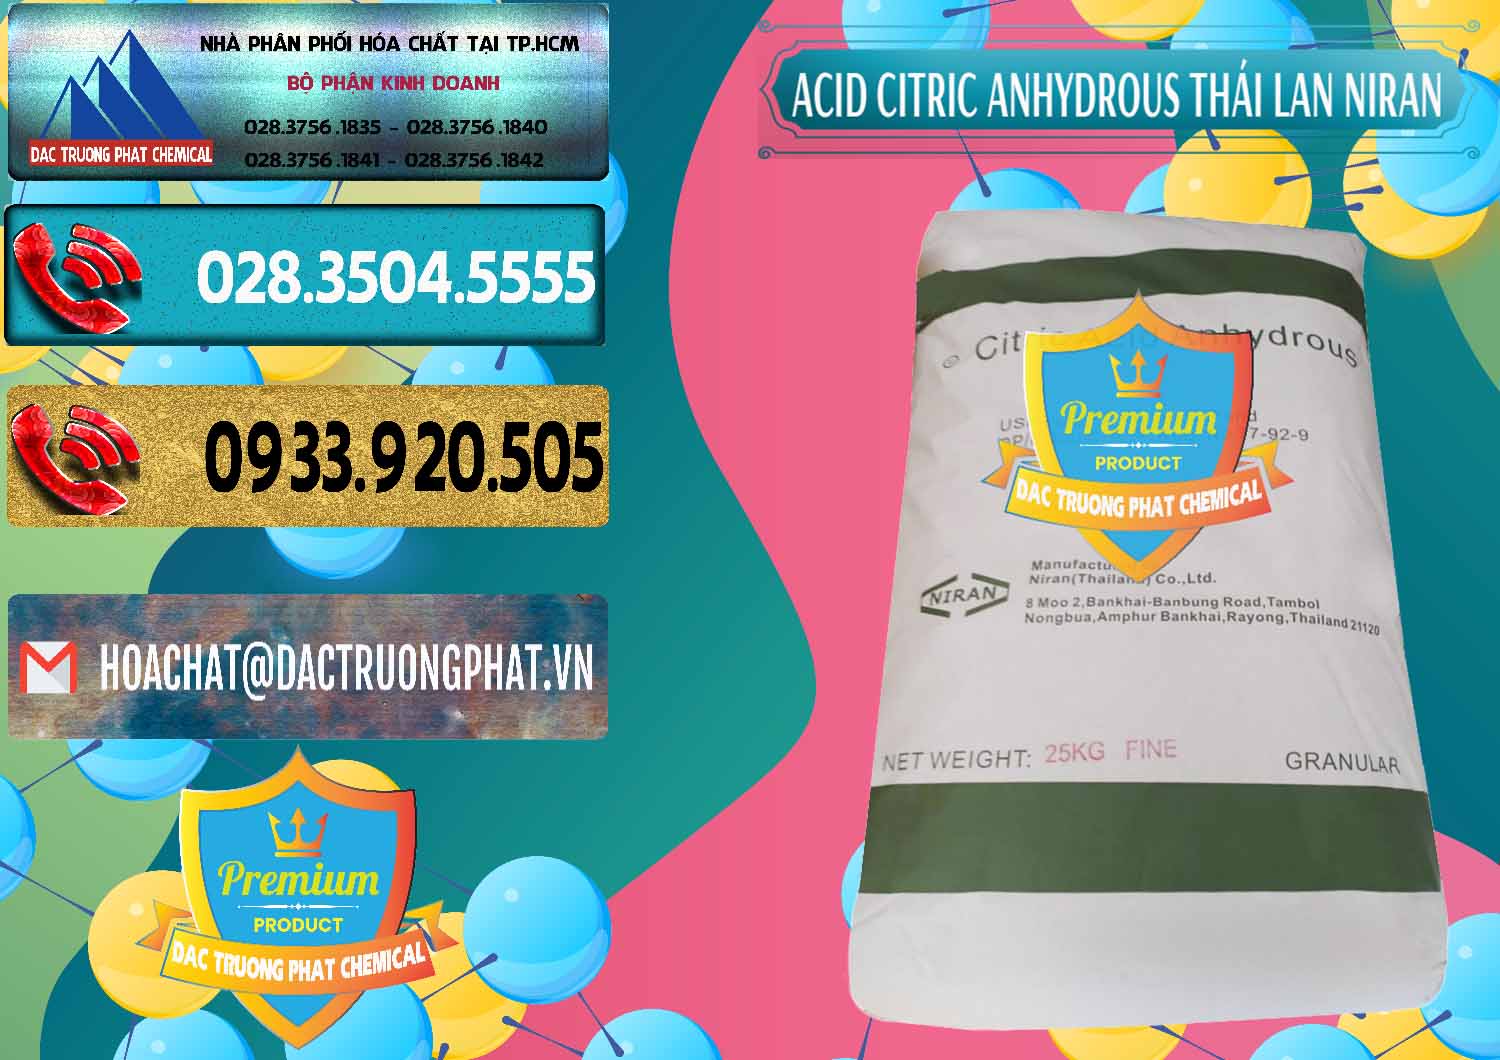 Công ty chuyên bán ( cung ứng ) Acid Citric - Axit Citric Anhydrous - Thái Lan Niran - 0231 - Cty nhập khẩu & cung cấp hóa chất tại TP.HCM - hoachatdetnhuom.com